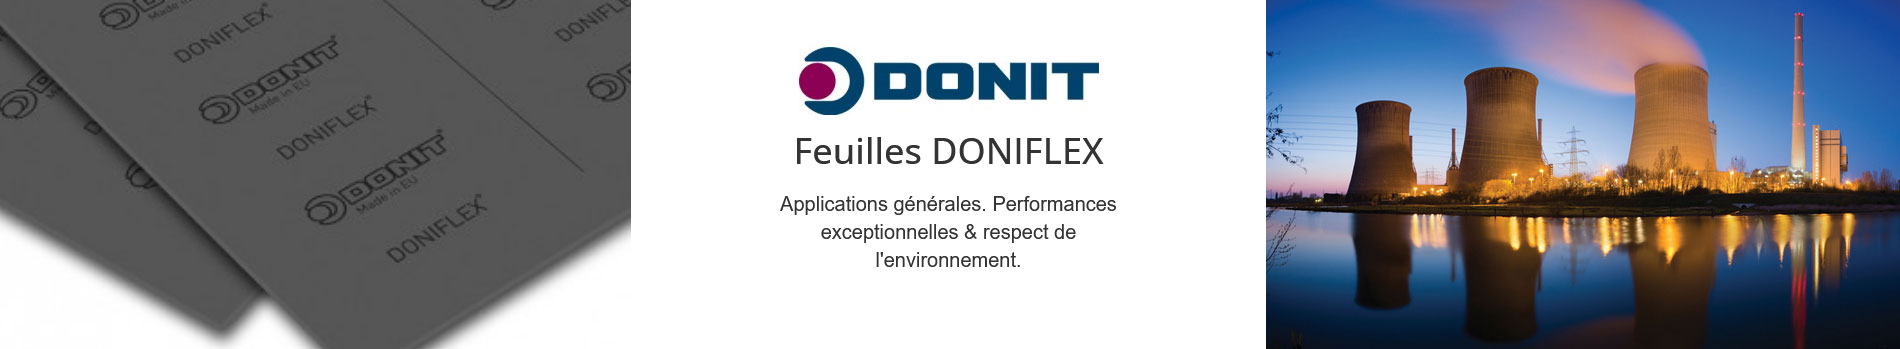 feuilles-doniflex-fr